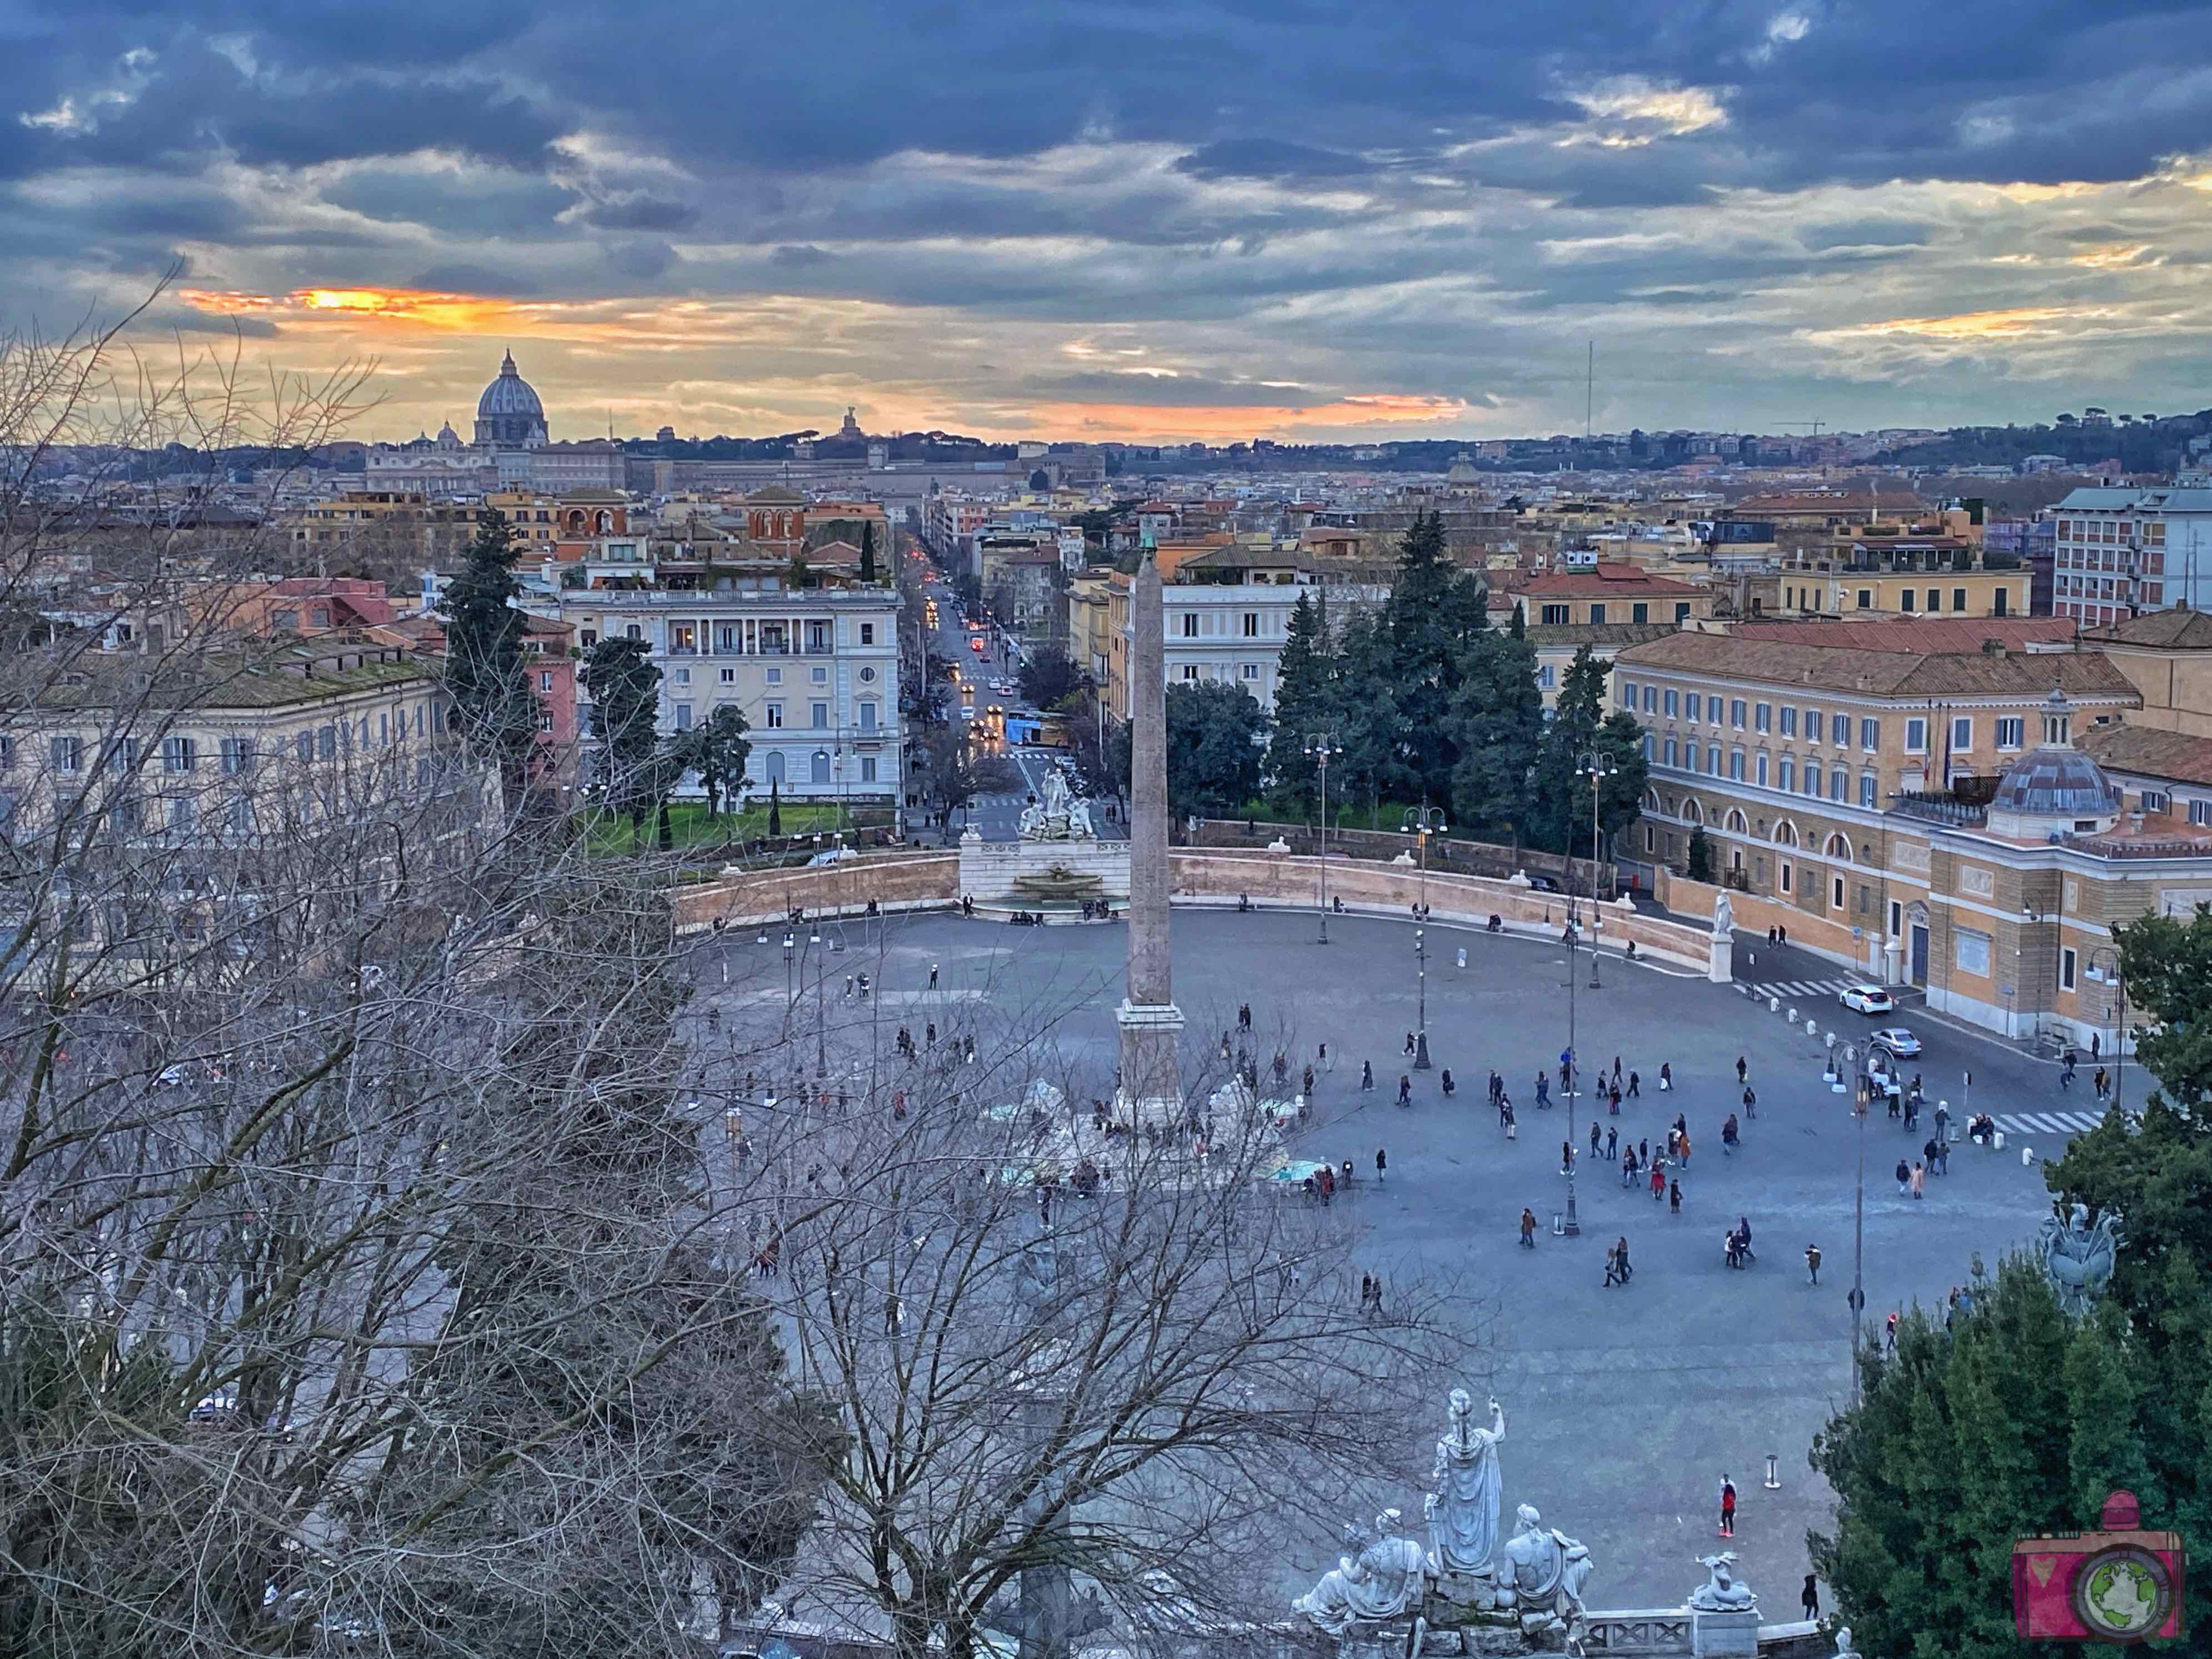 Cosa vedere a Roma Pincio - Viaggiare, uno stile di vita